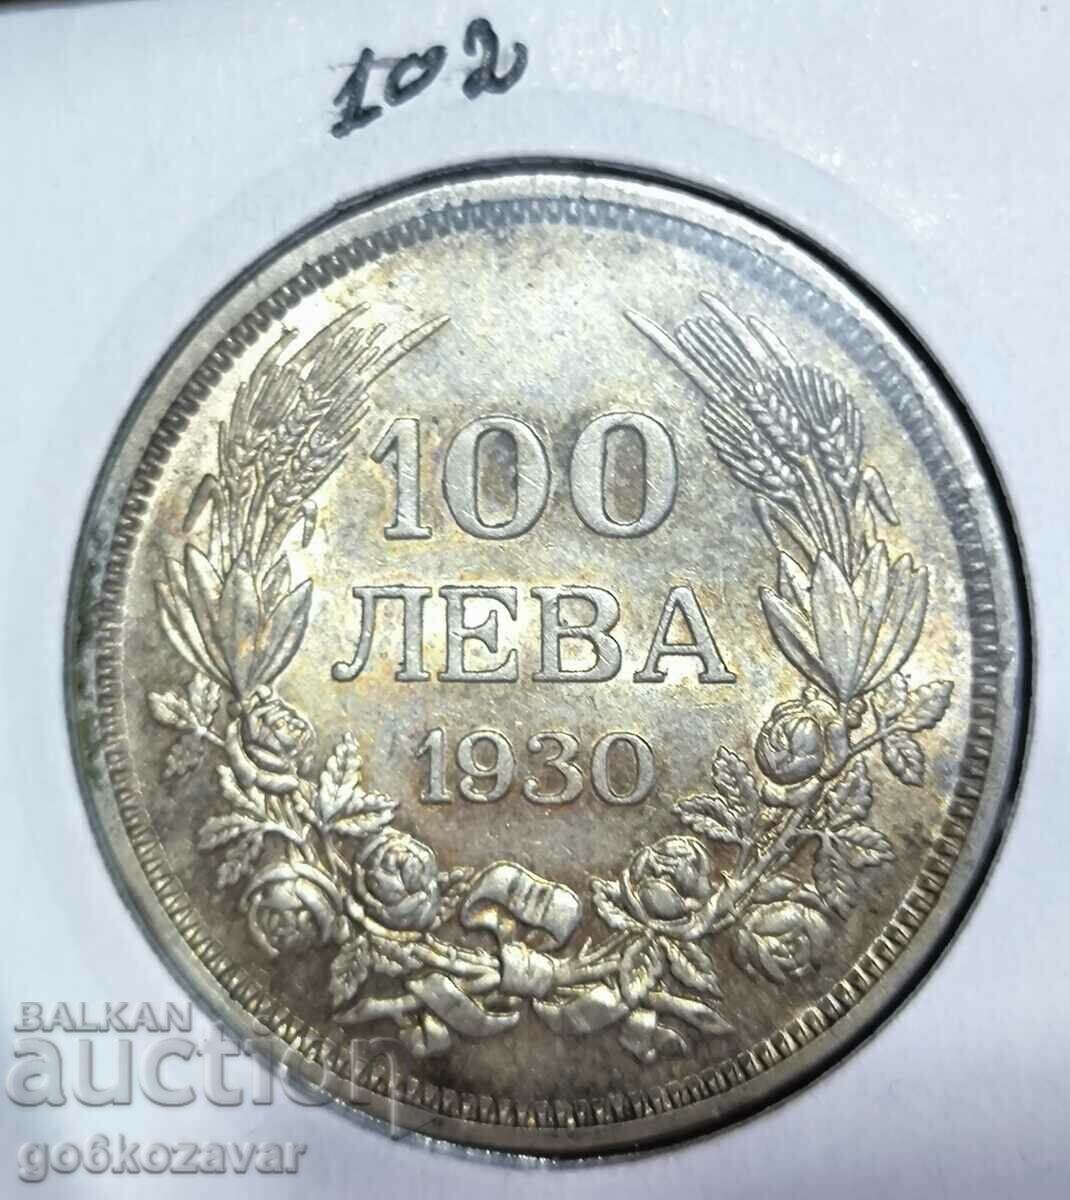 Βουλγαρία 100 BGN 1930 Ασήμι, κορυφαία ομορφιά! Συλλογή!